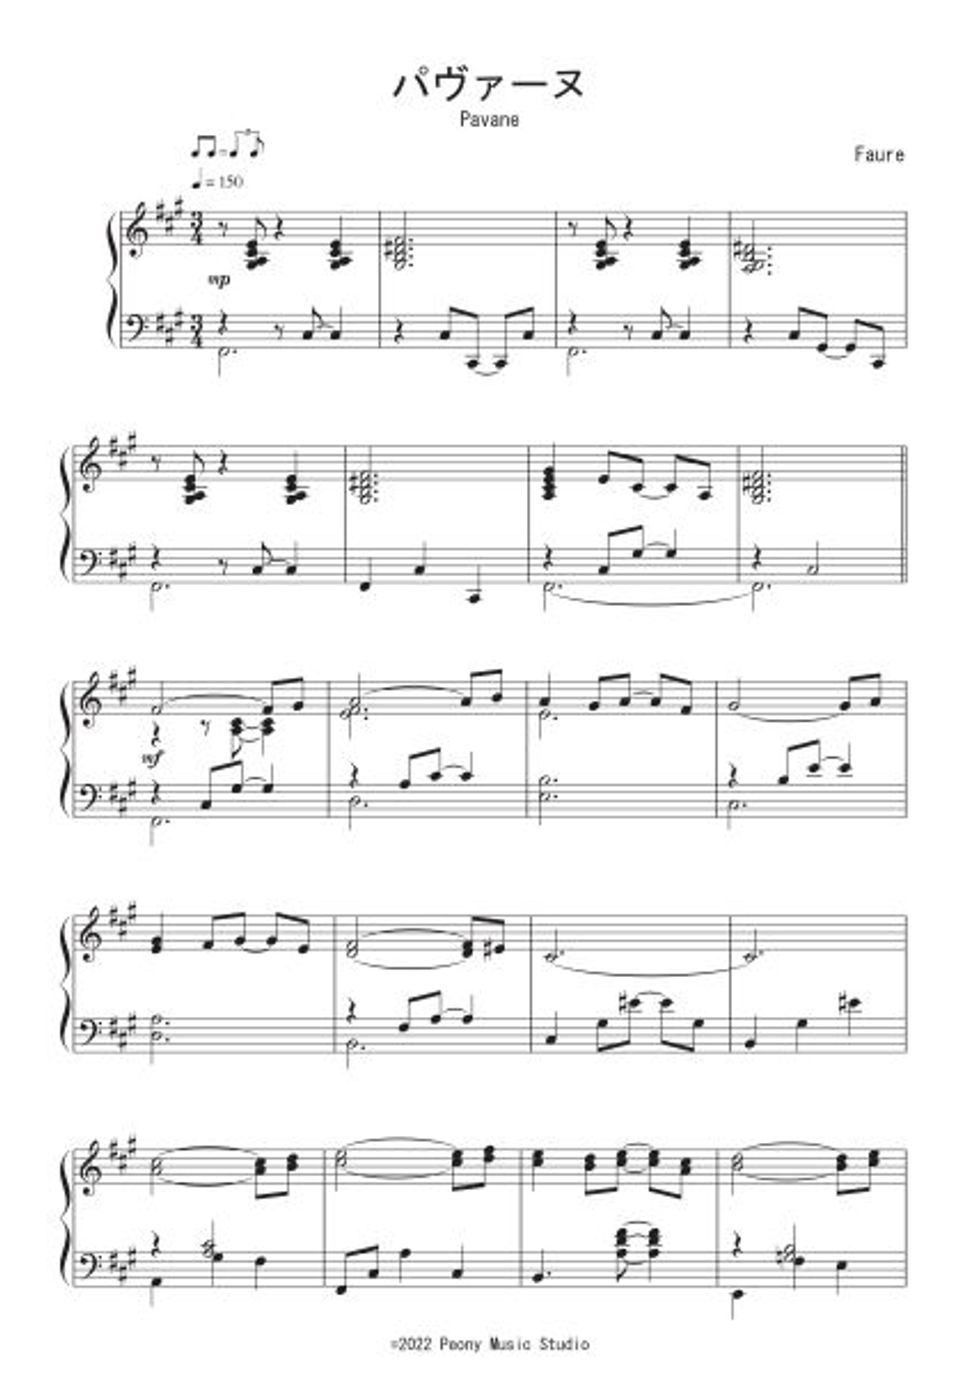 フォーレ - パヴァーヌ (Jazz Waltz Ver.) by Peony